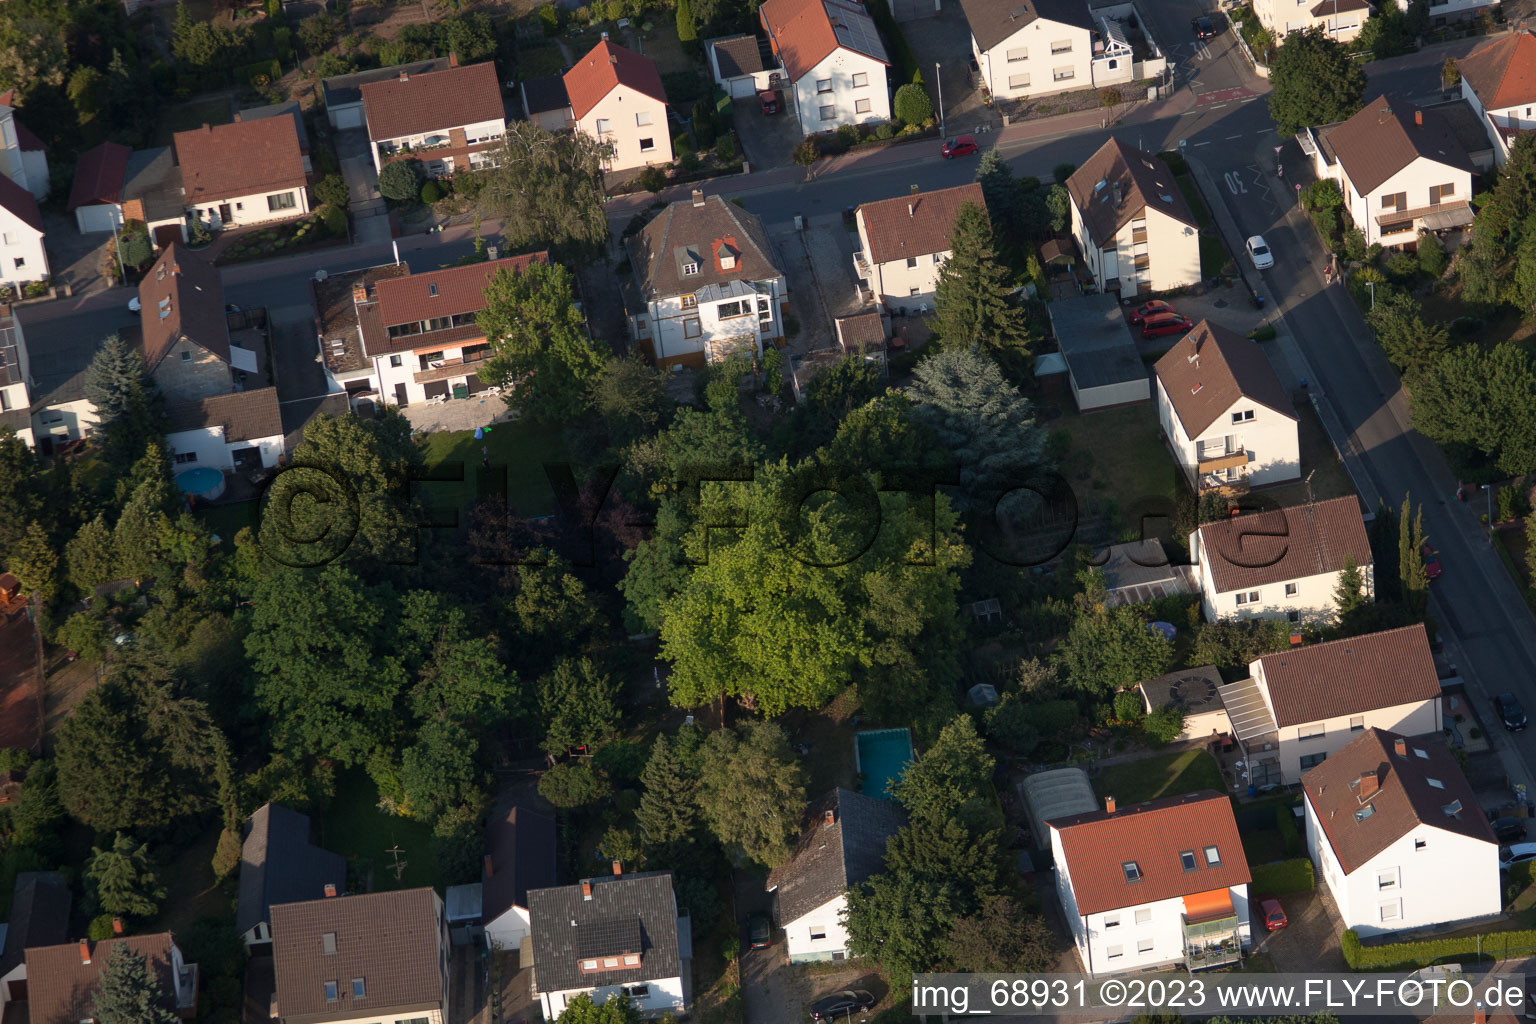 District Dannstadt in Dannstadt-Schauernheim in the state Rhineland-Palatinate, Germany viewn from the air